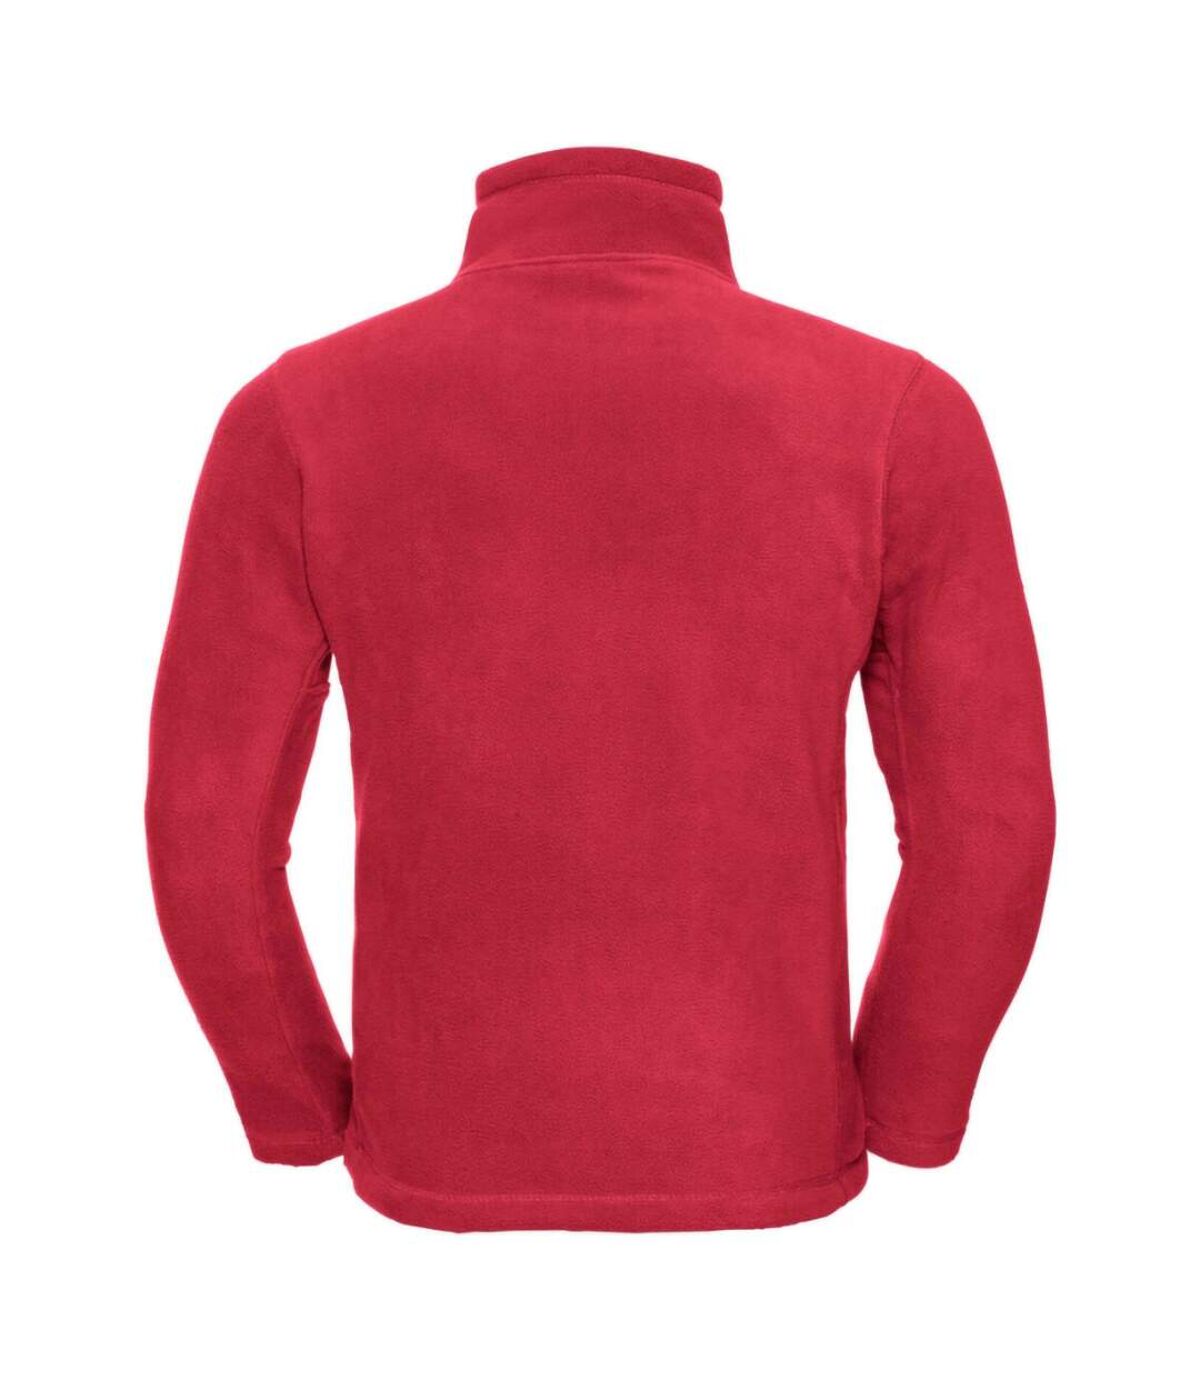 Russell Mens 1/4 Zip Outdoor Fleece Top (Classic Red) - UTBC1438